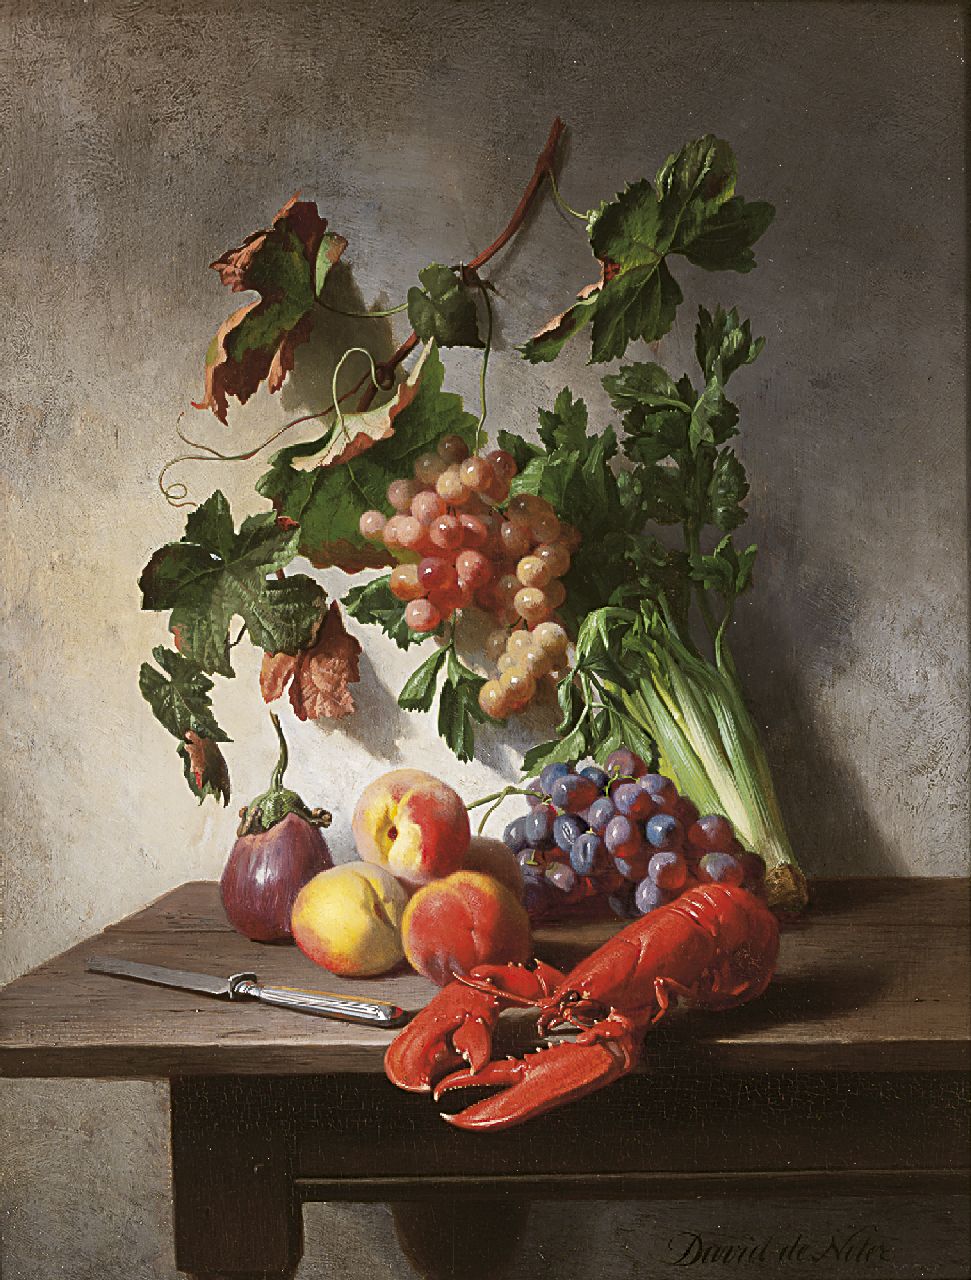 Noter D.E.J. de | 'David' Emile Joseph de Noter, Stilleven met groente, fruit, kreeft en een mes, olieverf op paneel 37,0 x 28,3 cm, gesigneerd rechtsonder